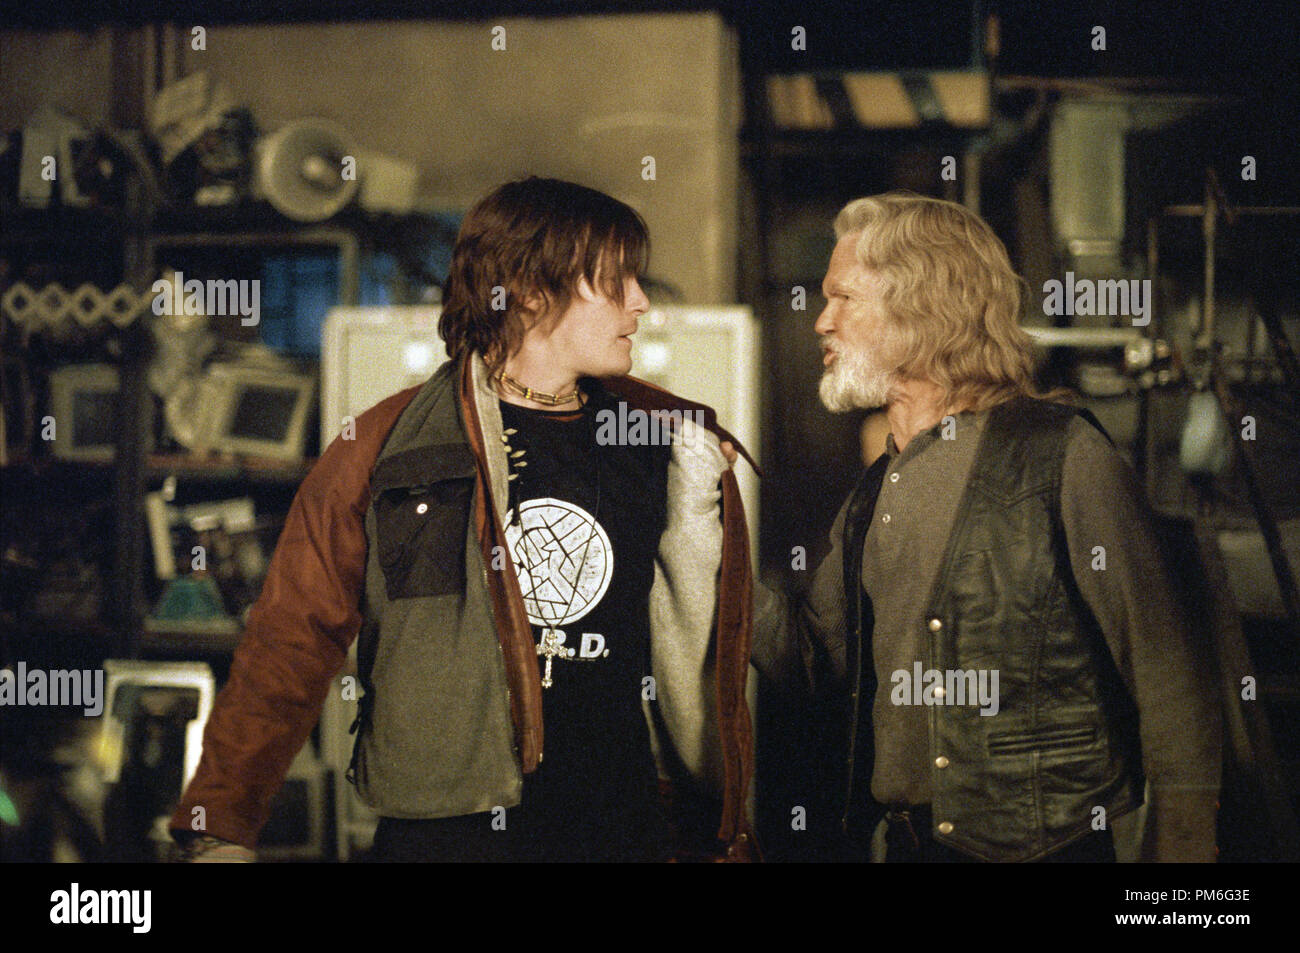 Film Still / Werbung noch von 'Blade II' Norman Reedus, Kris Kristofferson © 2002 New Line Cinema Foto: Bruce Talamon Stockfoto